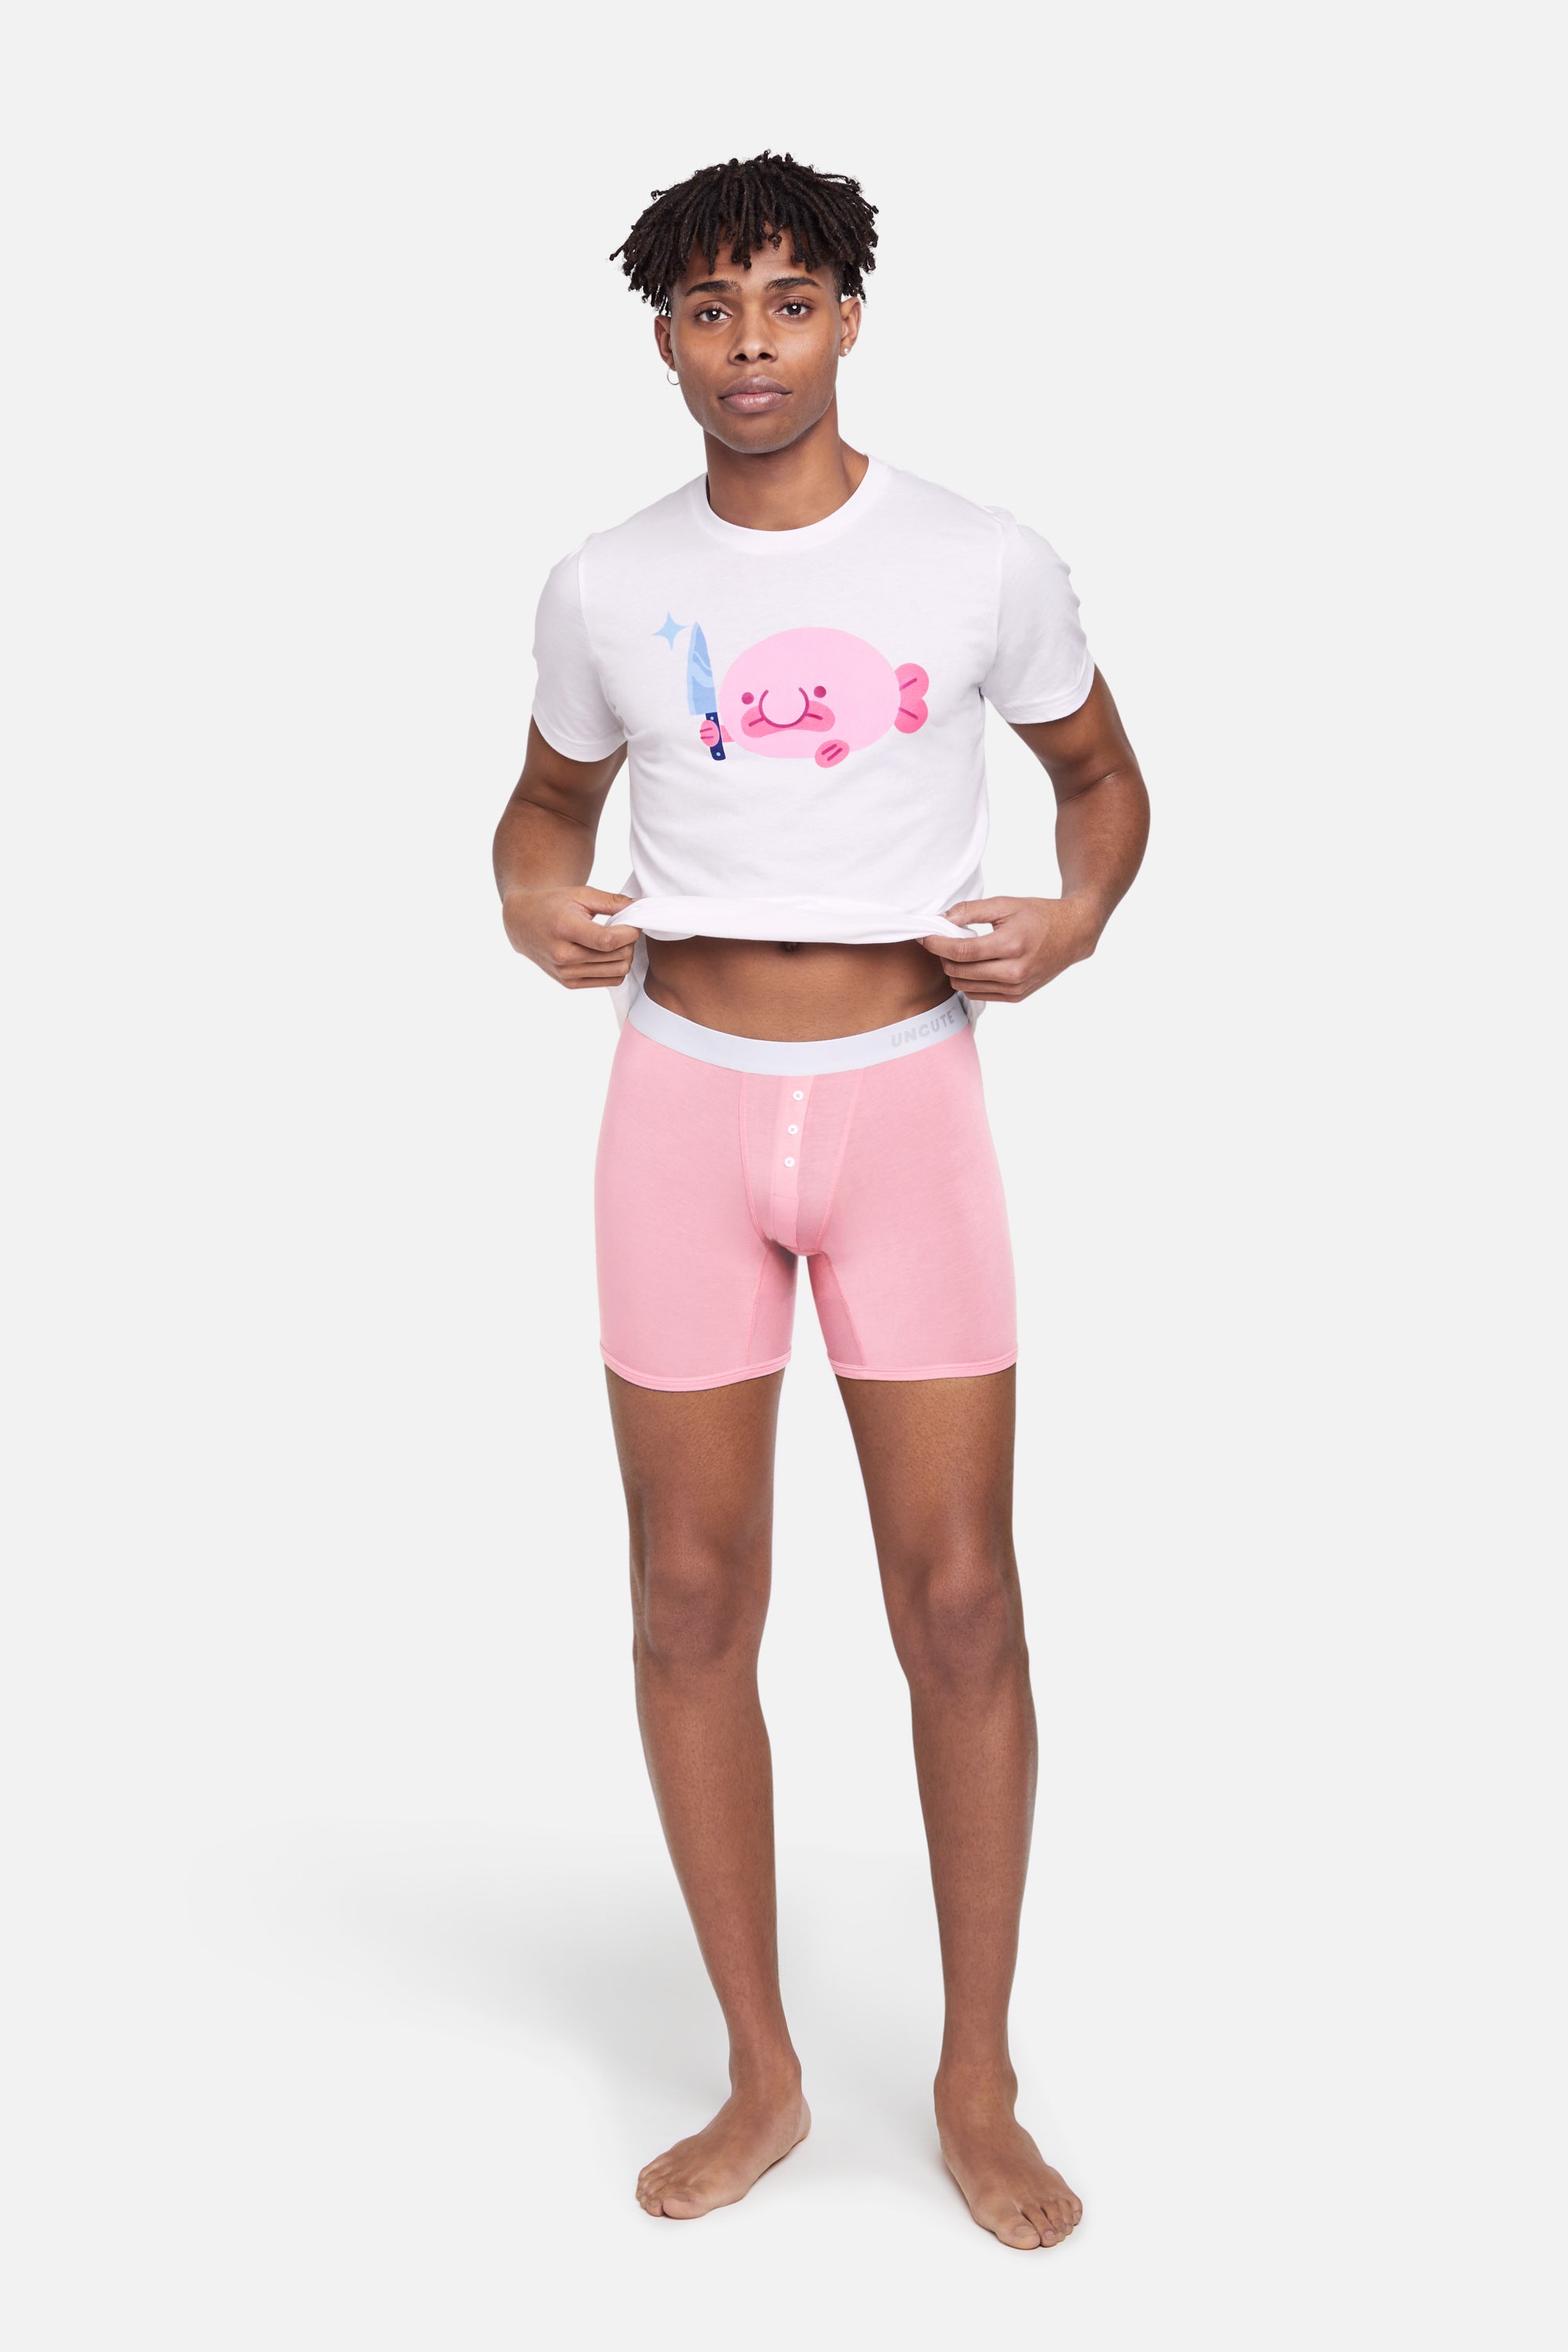 Blobby and Friends underwear - gender neutral briefs